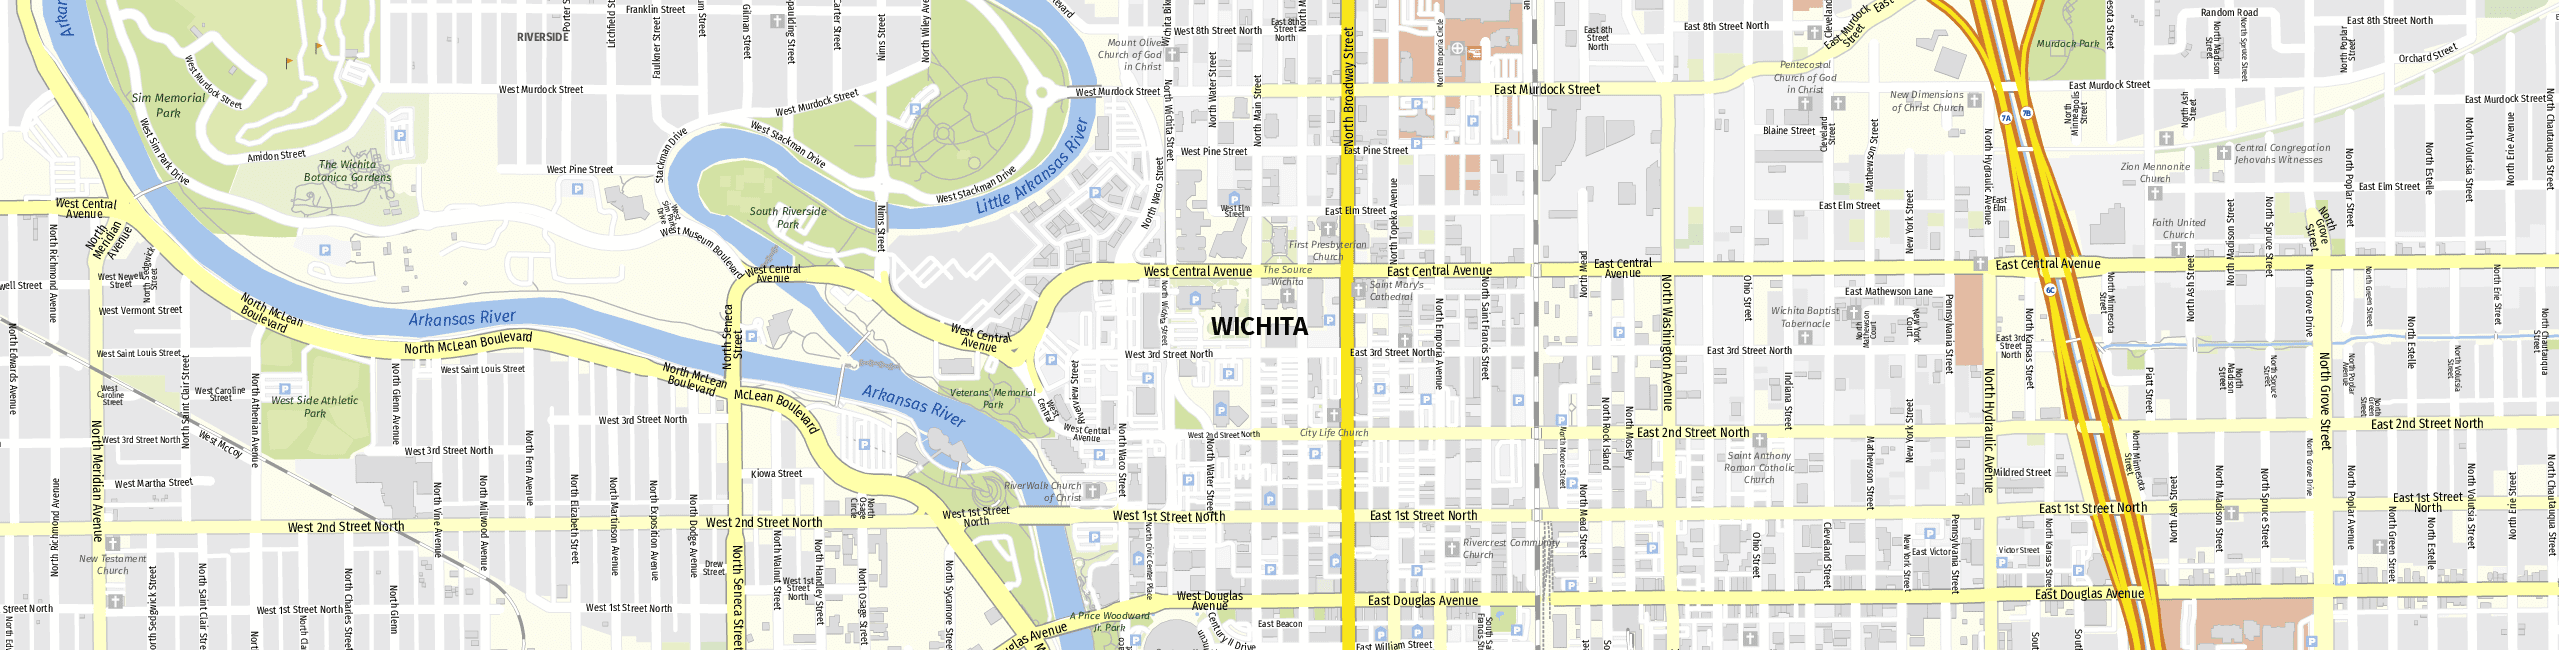 Stadtplan Wichita zum Downloaden.